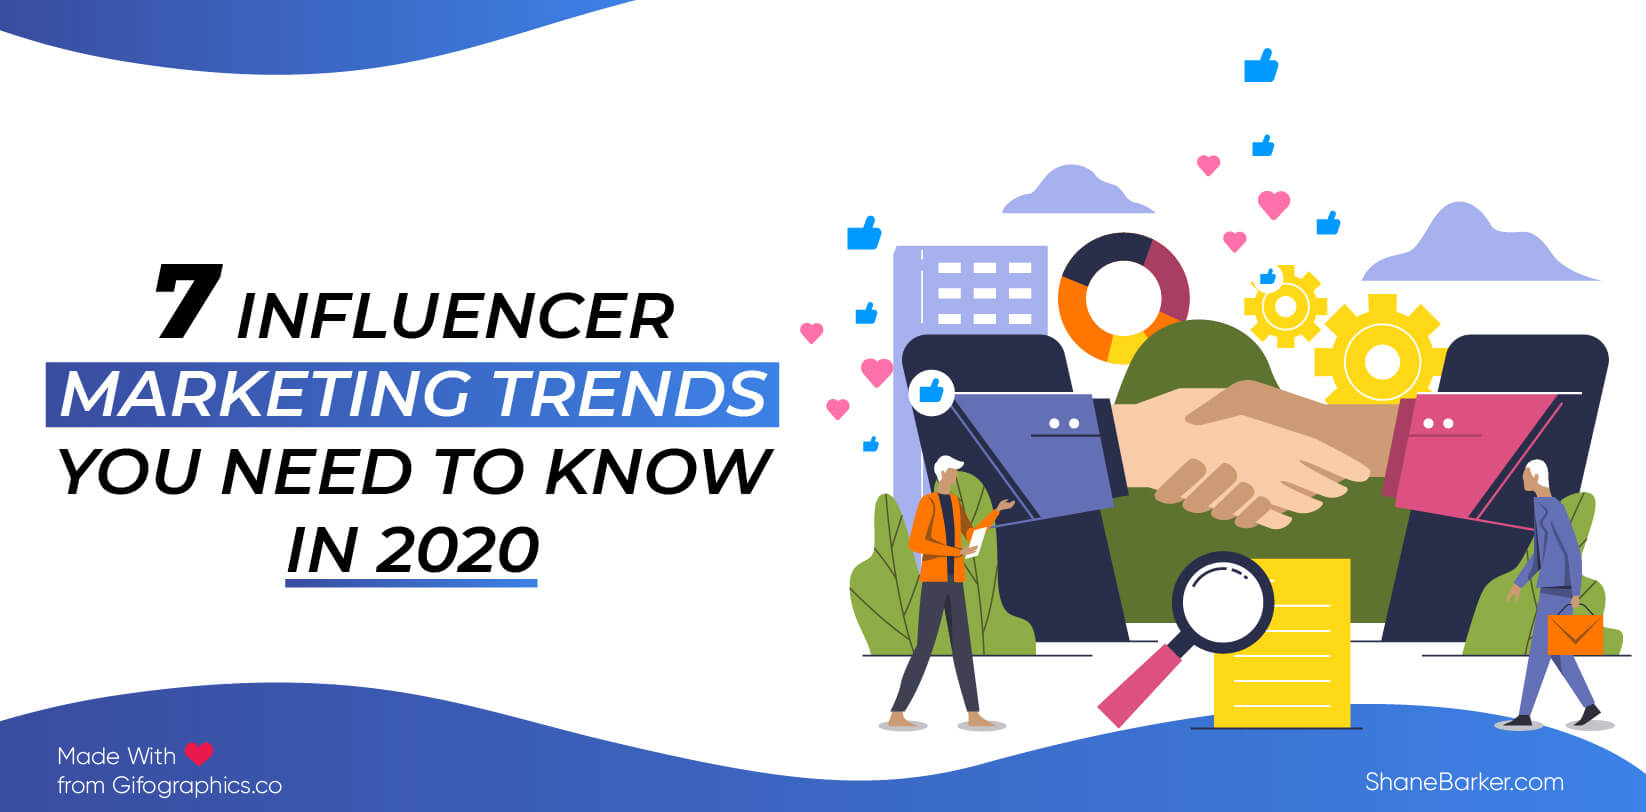 7 tendances du marketing d'influence que vous devez connaître en 2020 (mise à jour en octobre)